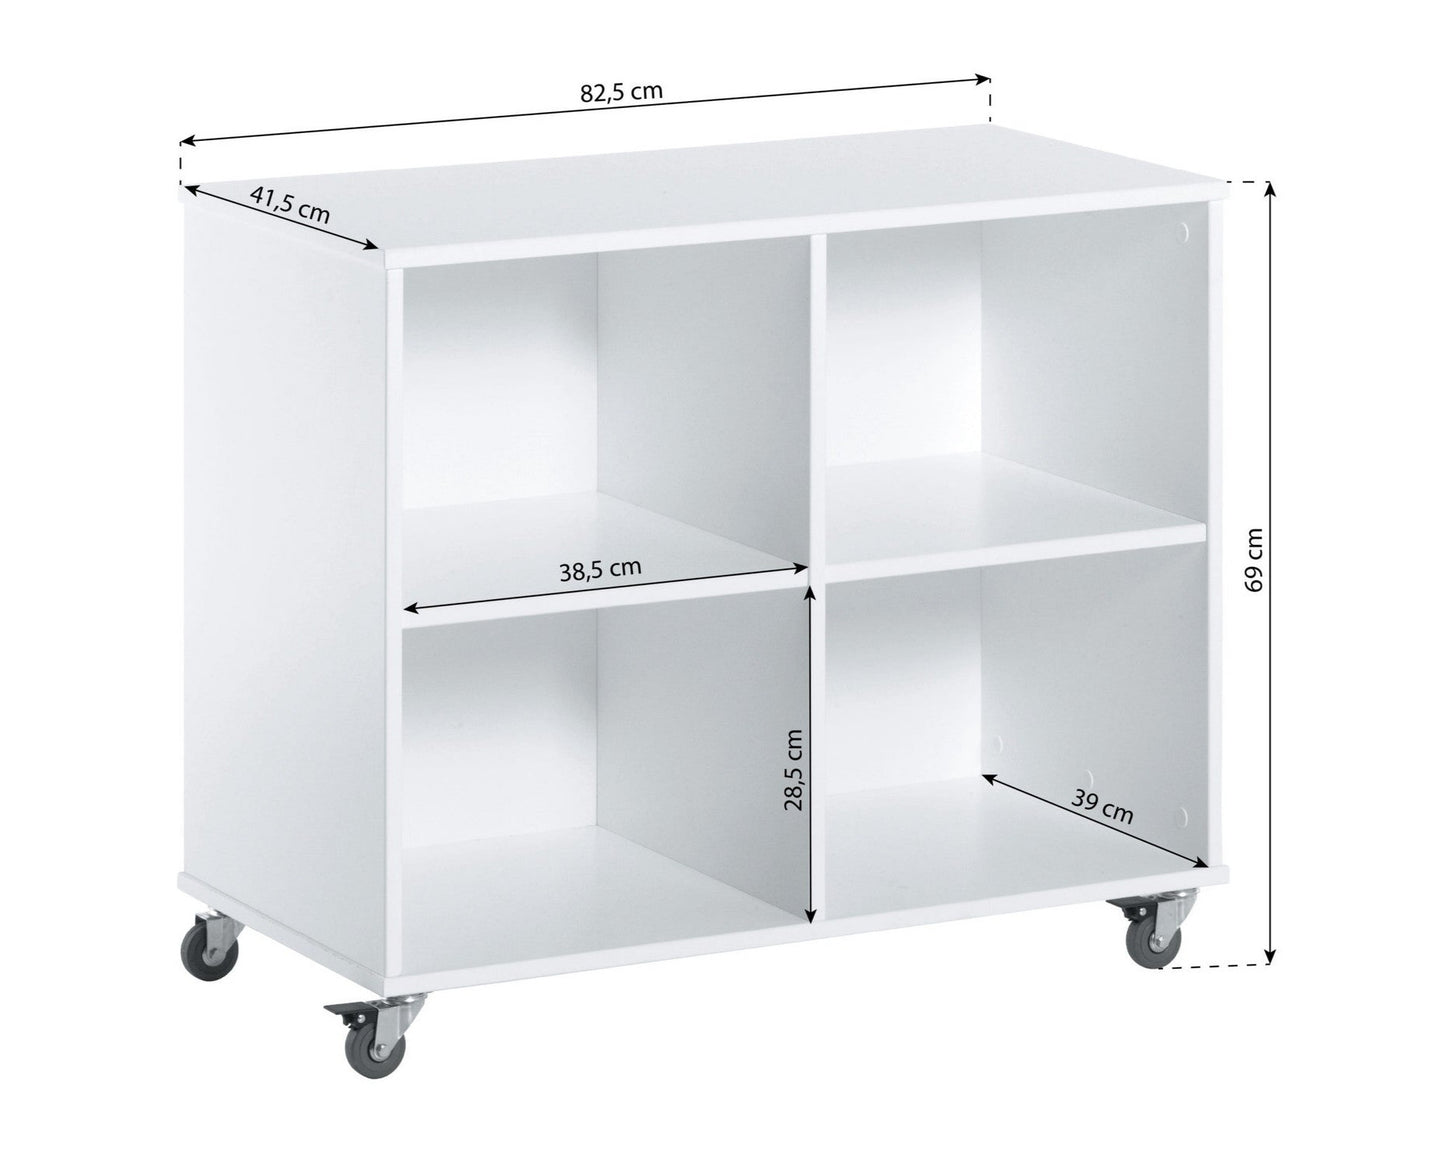 Bookshelf on wheels - 90 cm - white